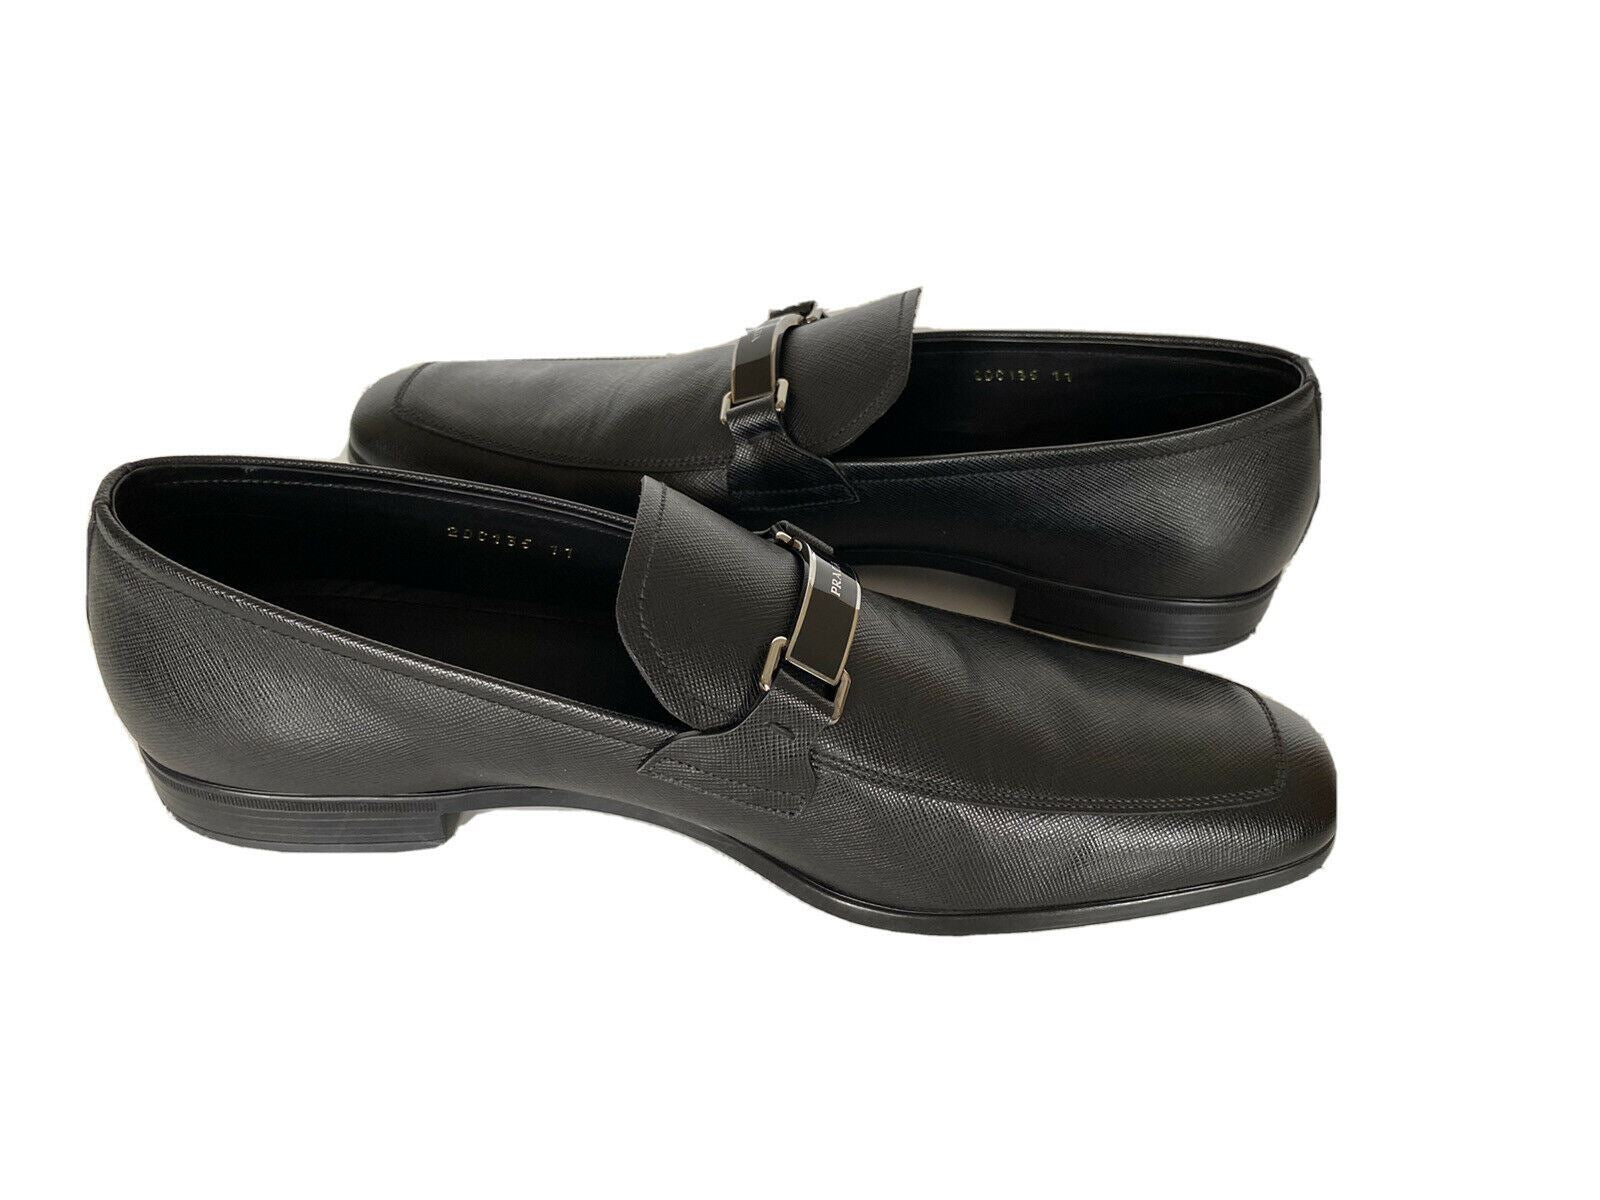 NIB PRADA Мужские черные кожаные туфли 12 США (Prada 11) 2DC135 Италия 